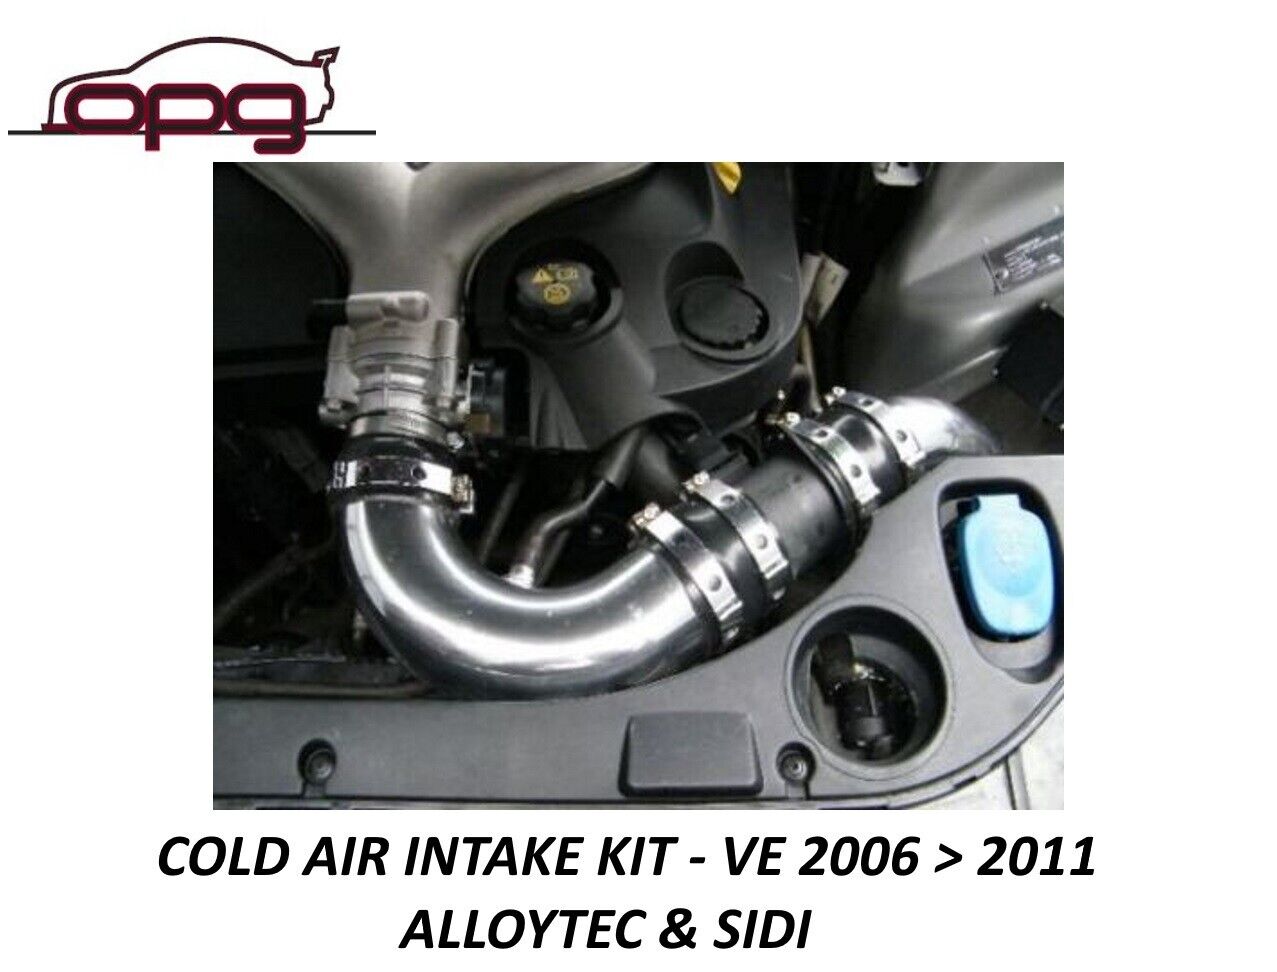 Cold Air Intake Kit for VE V6 Alloytec & Sidi to 2011 Thunder SV6 Calais Omega